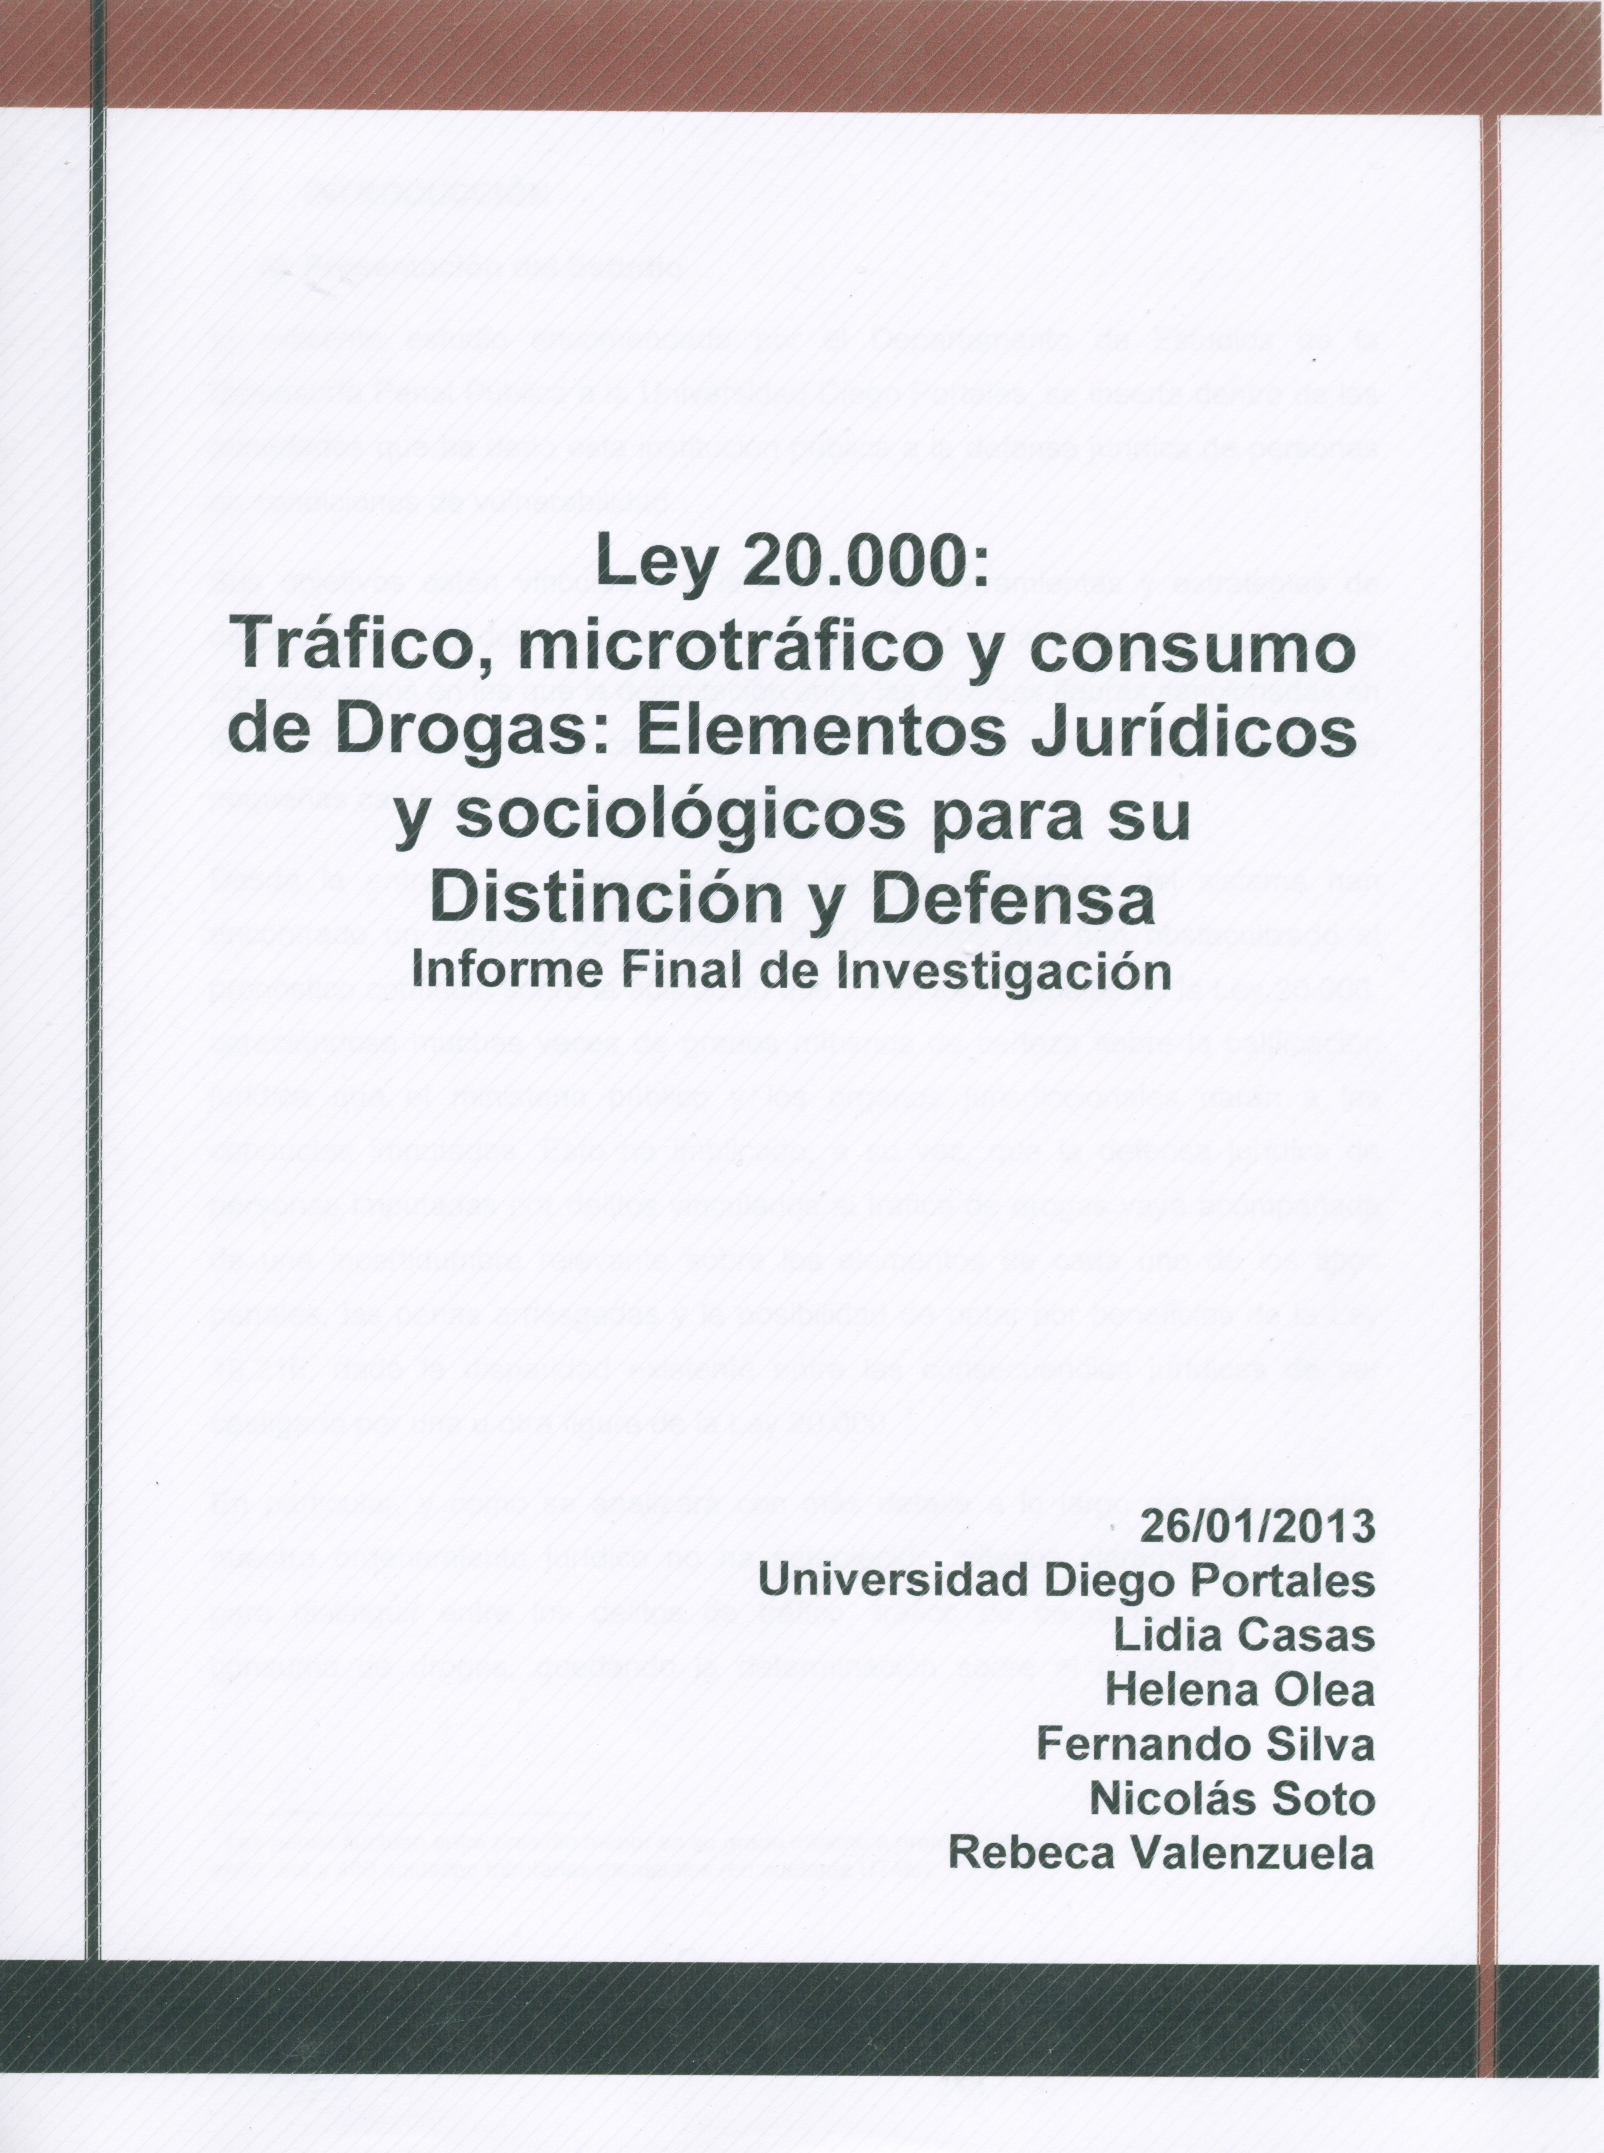 Ley 20.000: Tráfico, microtráfico y consumo de Drogas: elementos jurídicos y sociológicos para su distinción y defensa. Informe final de investigación